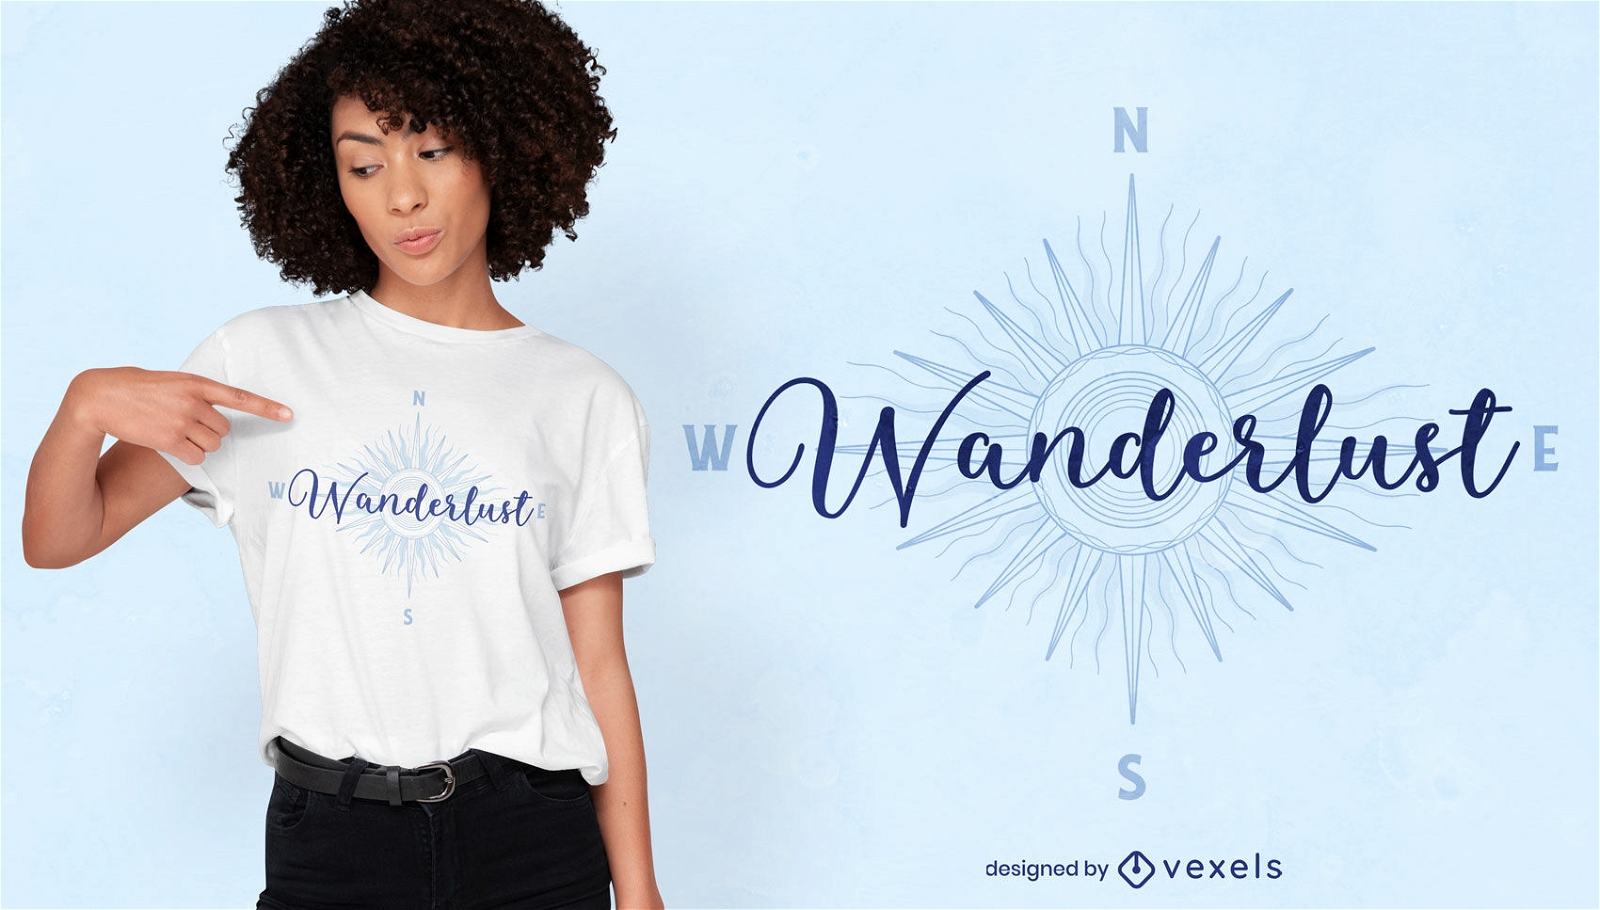 Wanderlust t-shirt design